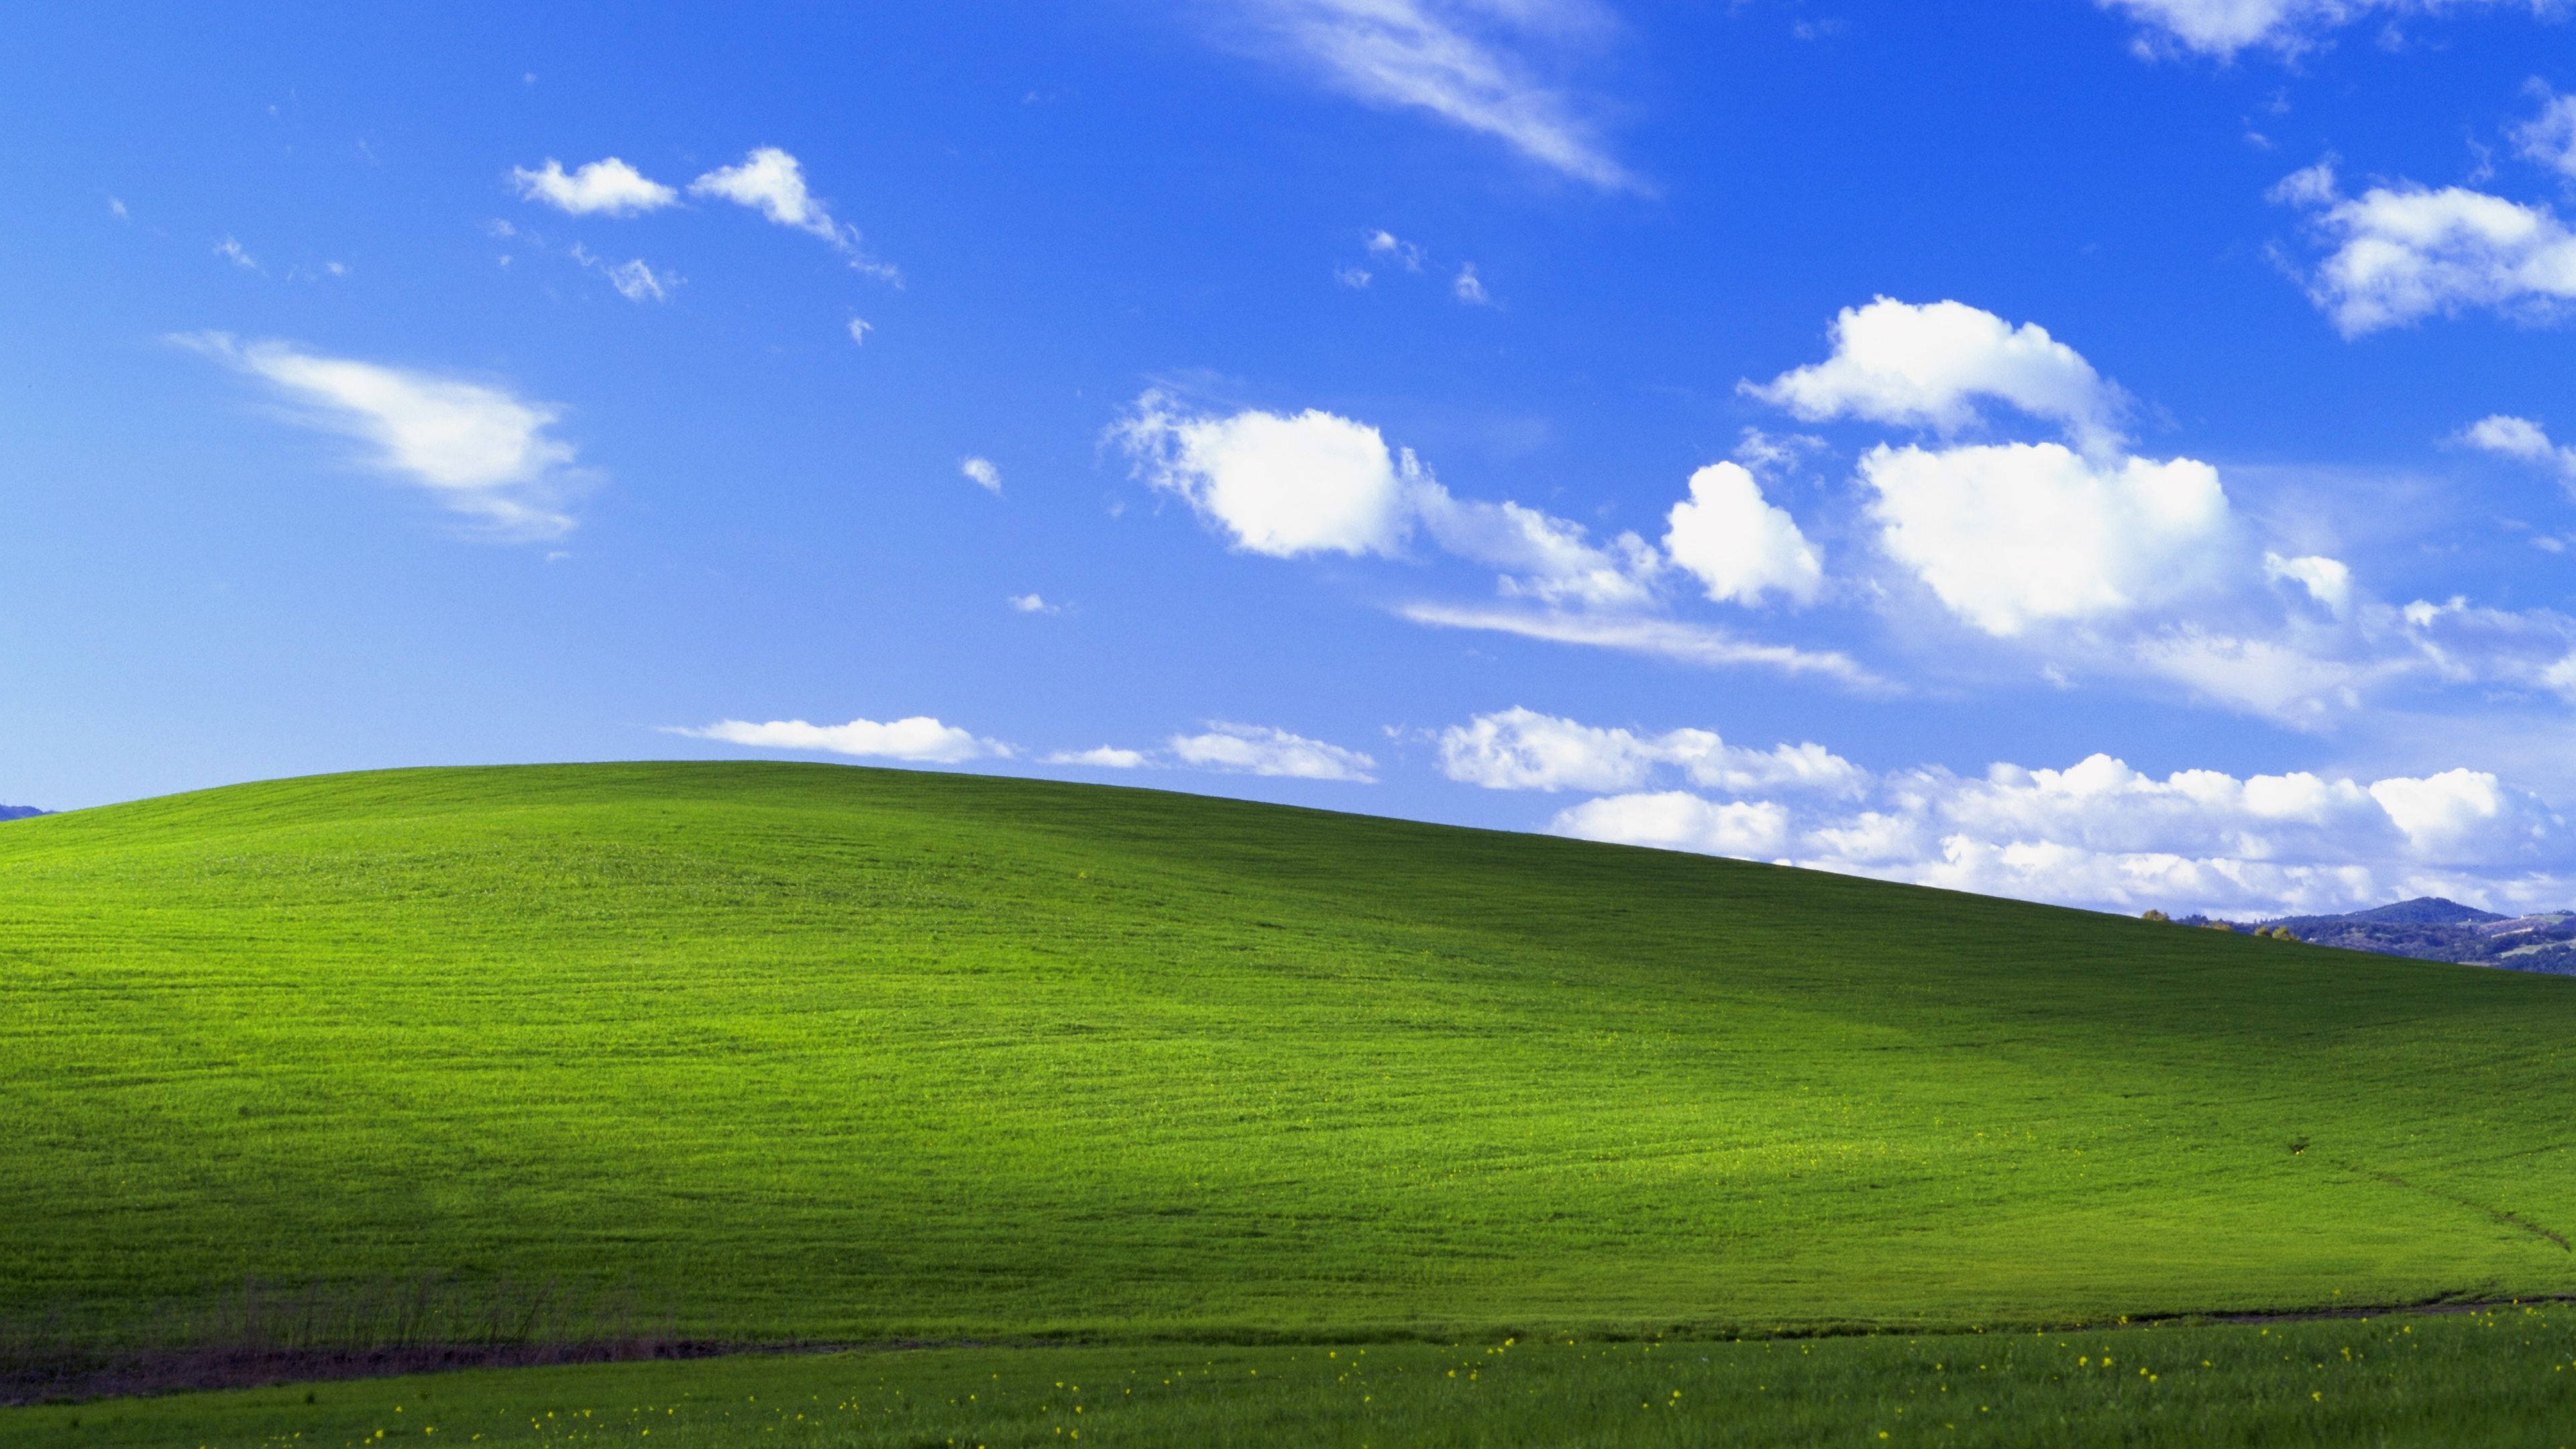 Hình nền Windows XP là hình nền được yêu thích nhất trên thế giới. Điều này không khó hiểu khi nó đã trở thành một biểu tượng cổ điển. Hình ảnh liên quan sẽ cho bạn thấy rằng sản phẩm này không chỉ đẹp mà nó còn đem lại sự tinh tế và thanh lịch cho màn hình của bạn.